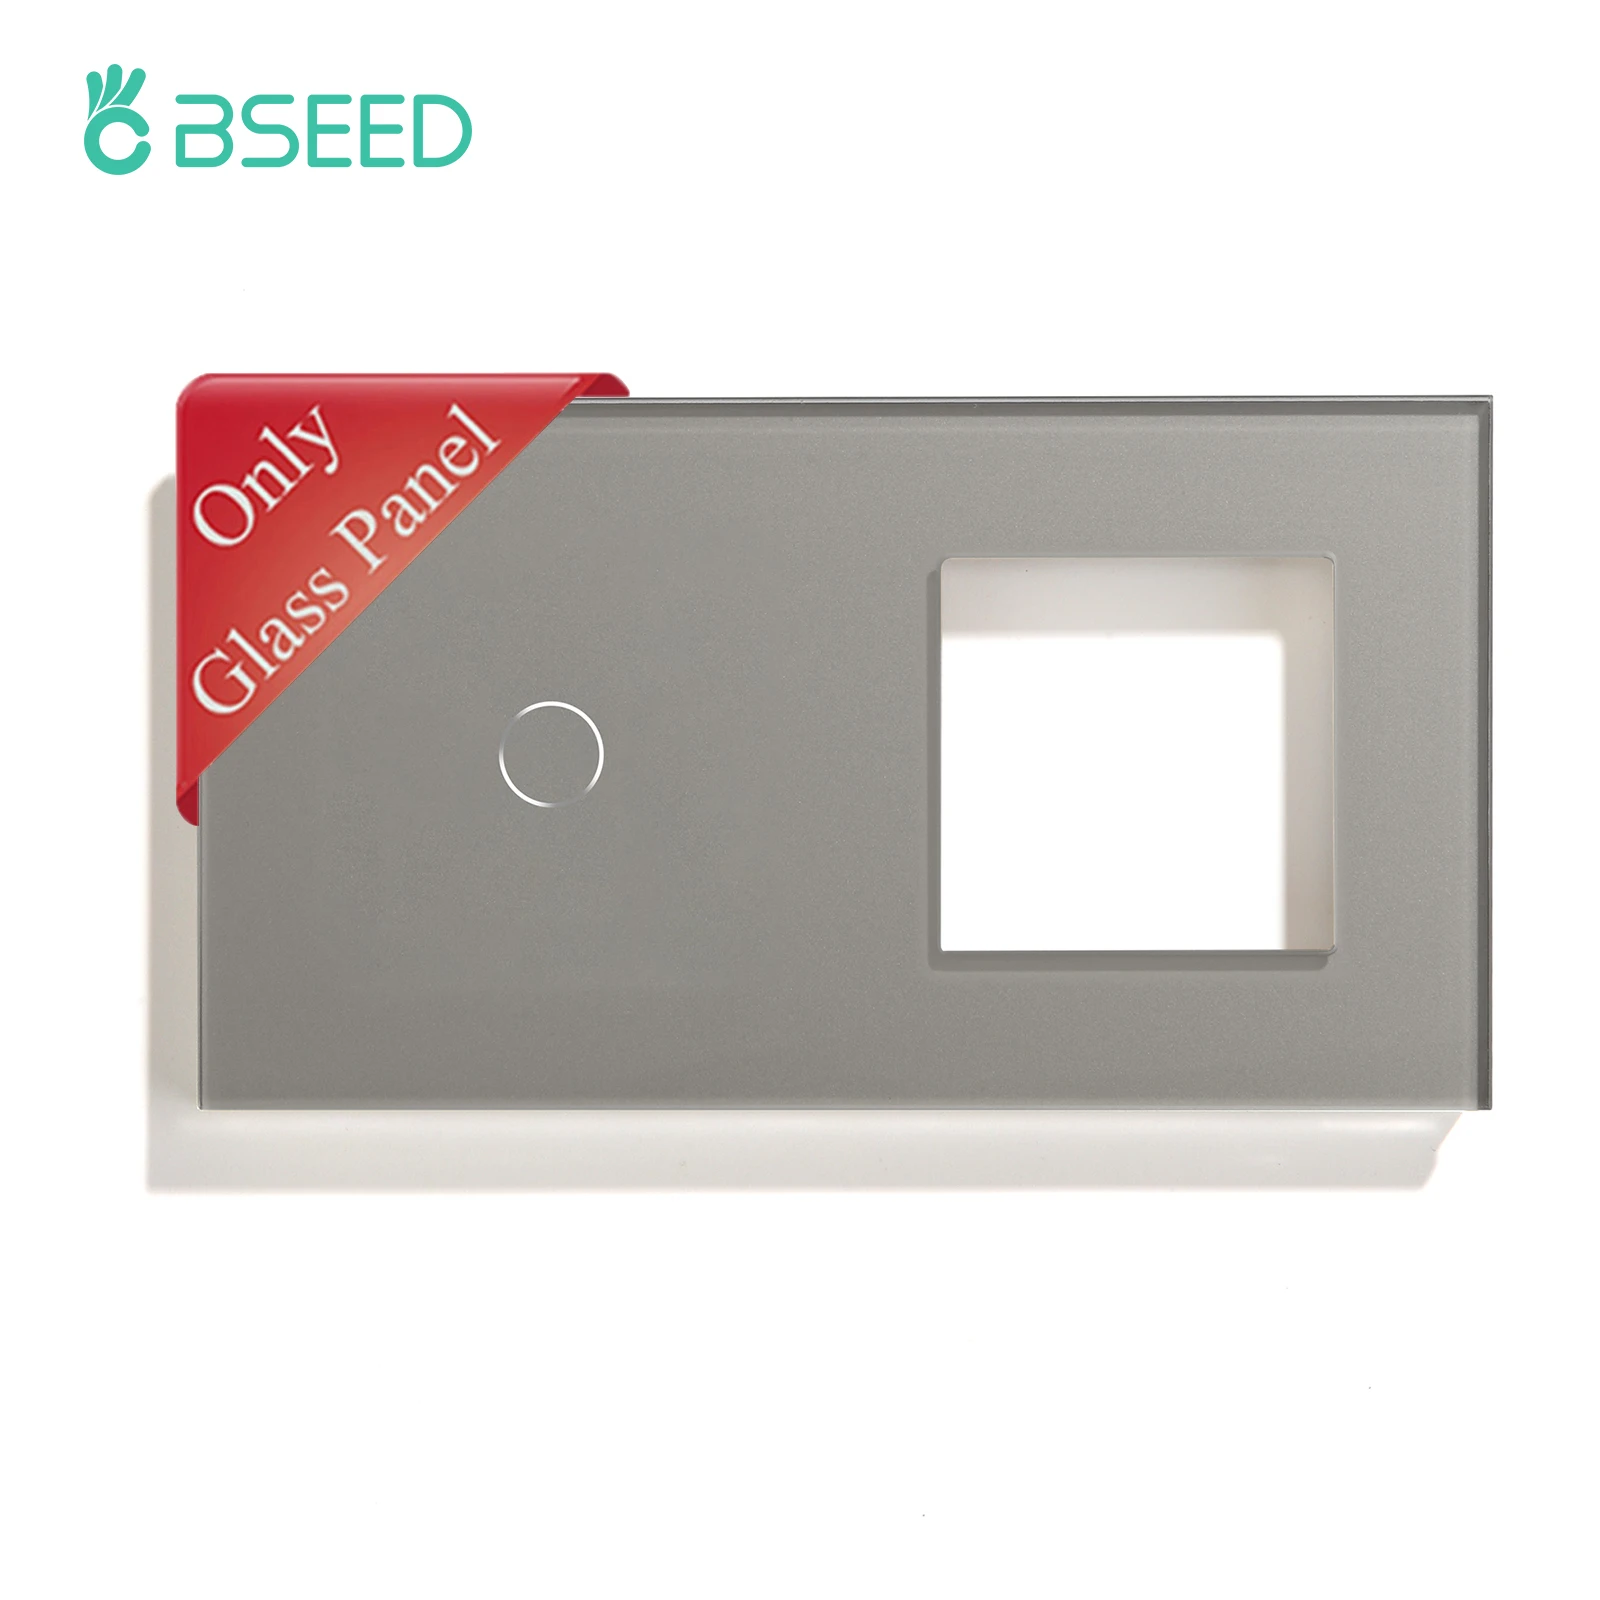 

Панель сенсорного выключателя BSEED европейского стандарта, настенная рама для розетки, 1/2/3 клавиши, кристаллическая стеклянная панель, запчасти «сделай сам», металлическое основание в комплекте, серый цвет